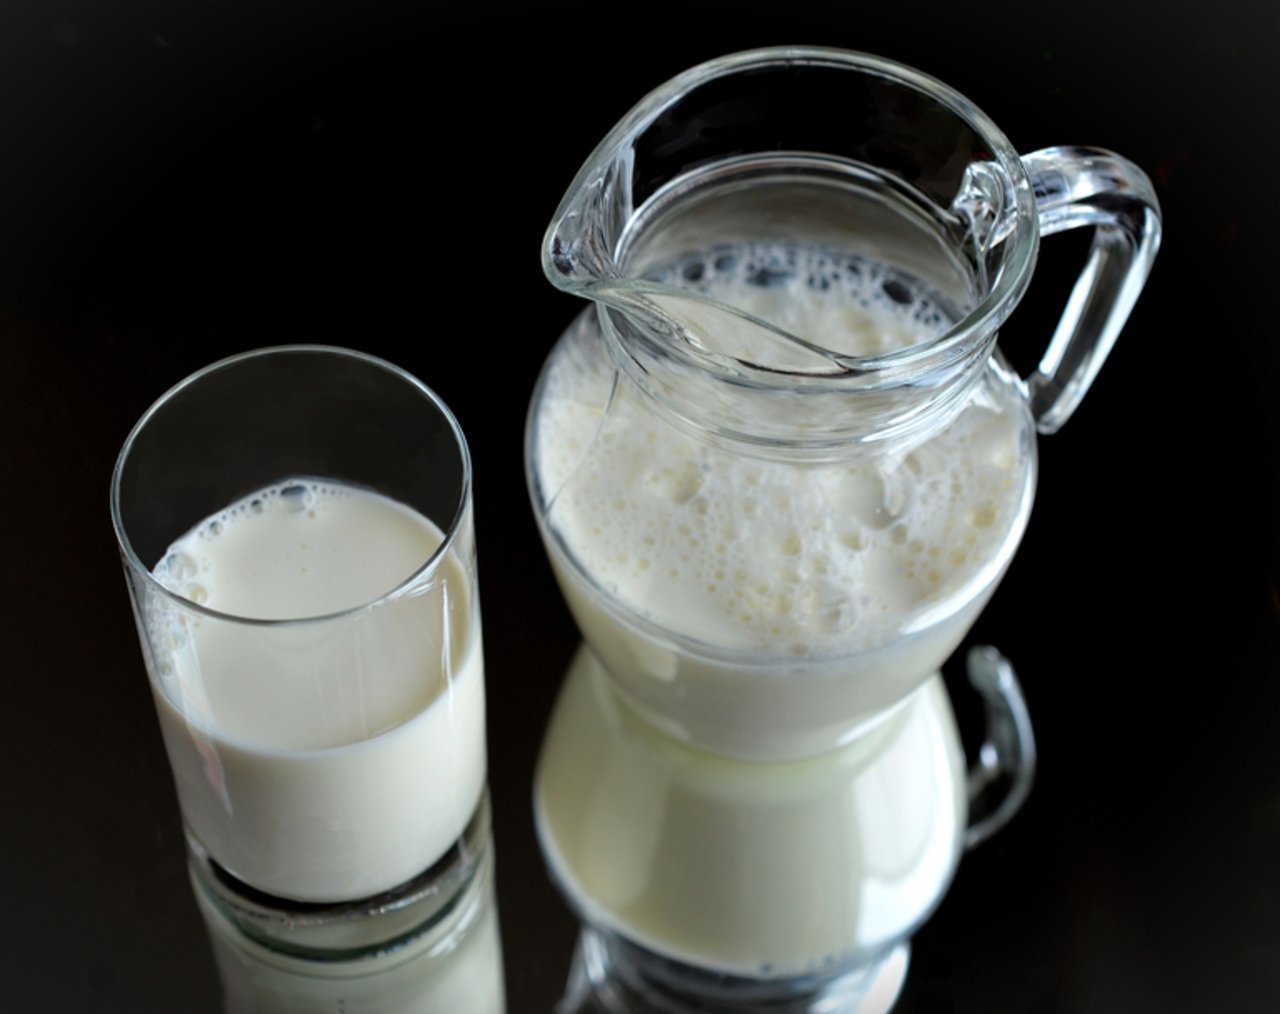 In Deutschland sinkt der Milchkonsum weiter. Zum ersten Mal ist der Konsum unter die 50 kg-Marke gefallen. (Bild BauZ)